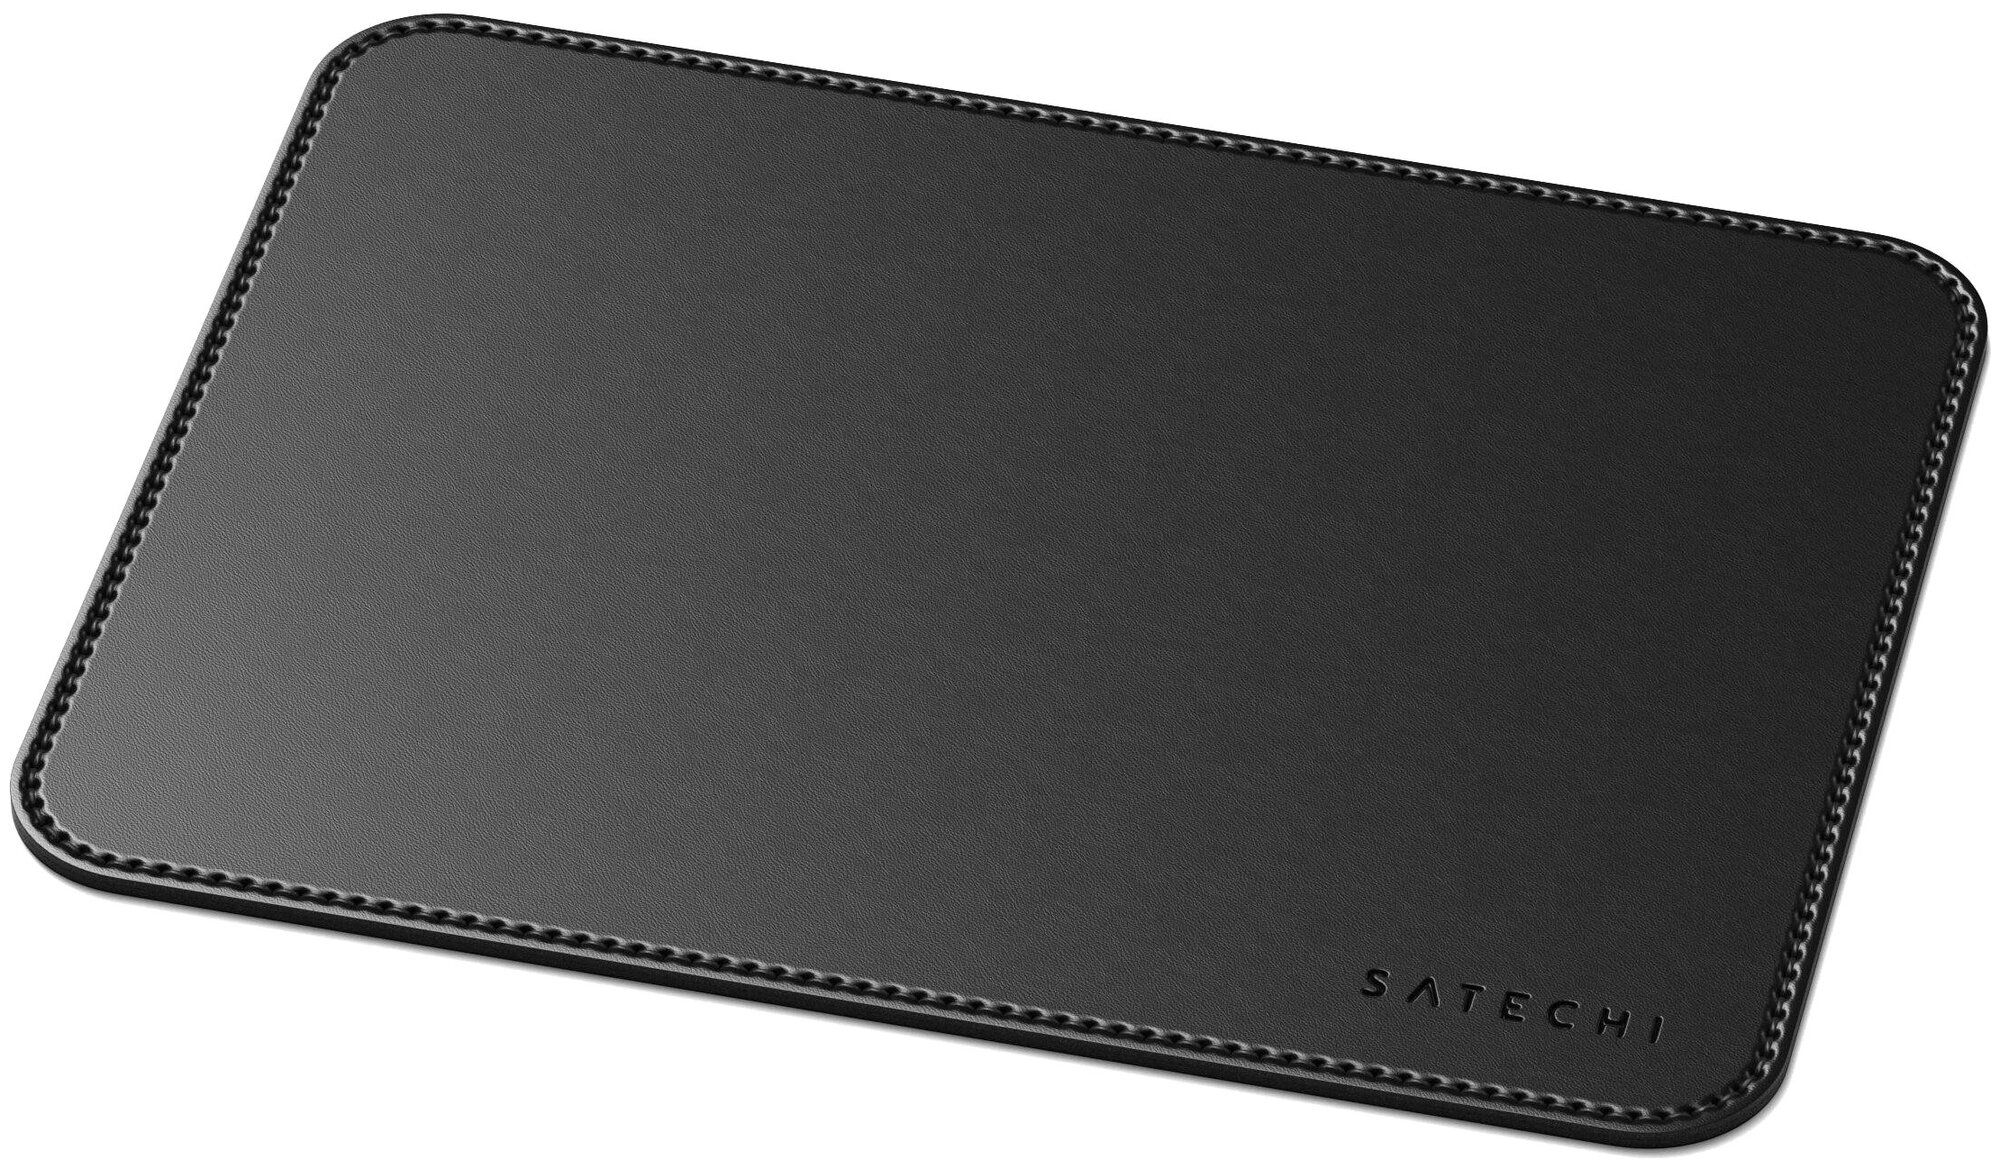 Коврик Satechi Eco Leather Mouse Pad Размер 25 x 19 см. черный. коврик игровой pulsar es1 mouse pad 3mm l 420x330 black